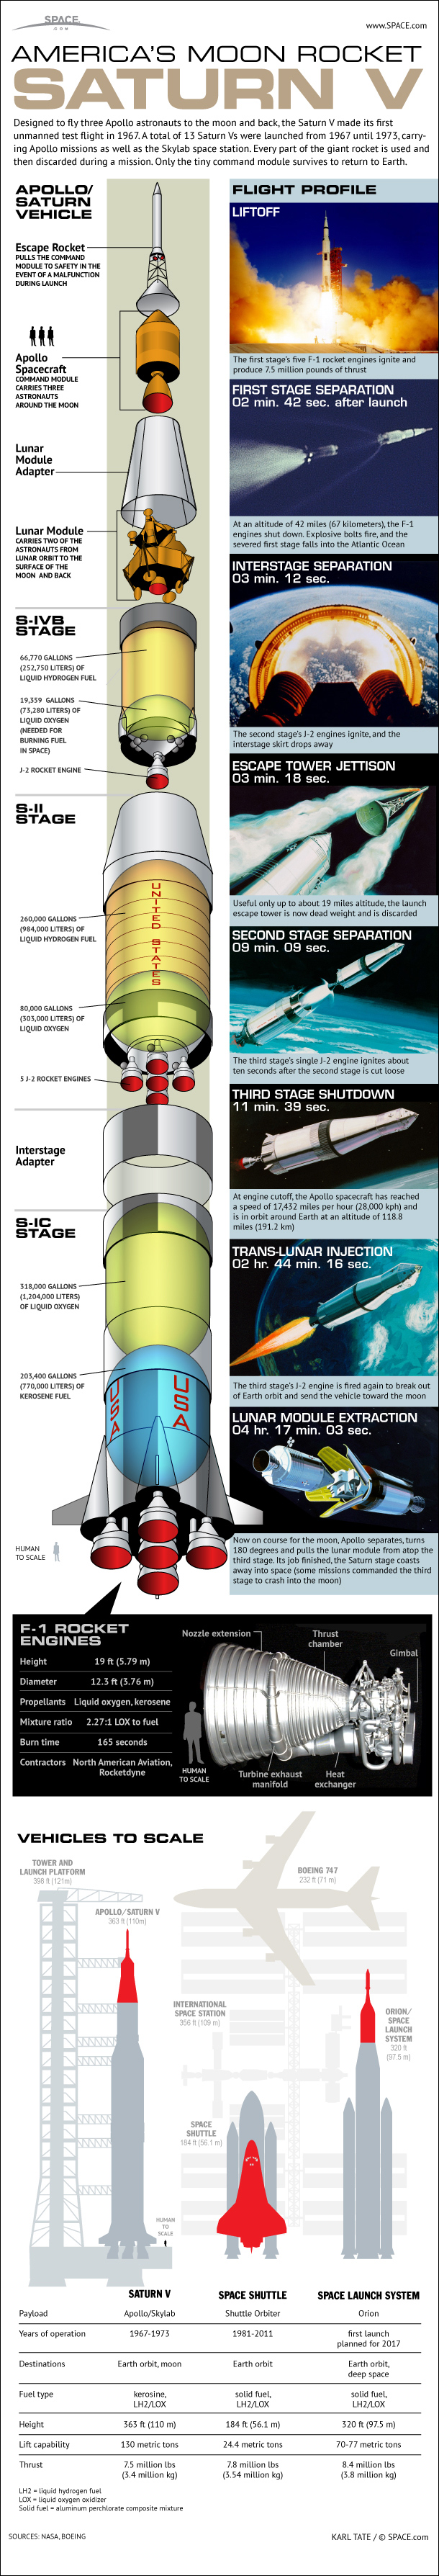 NASA's Mighty Saturn V Moon Rocket Explained (Infographic)